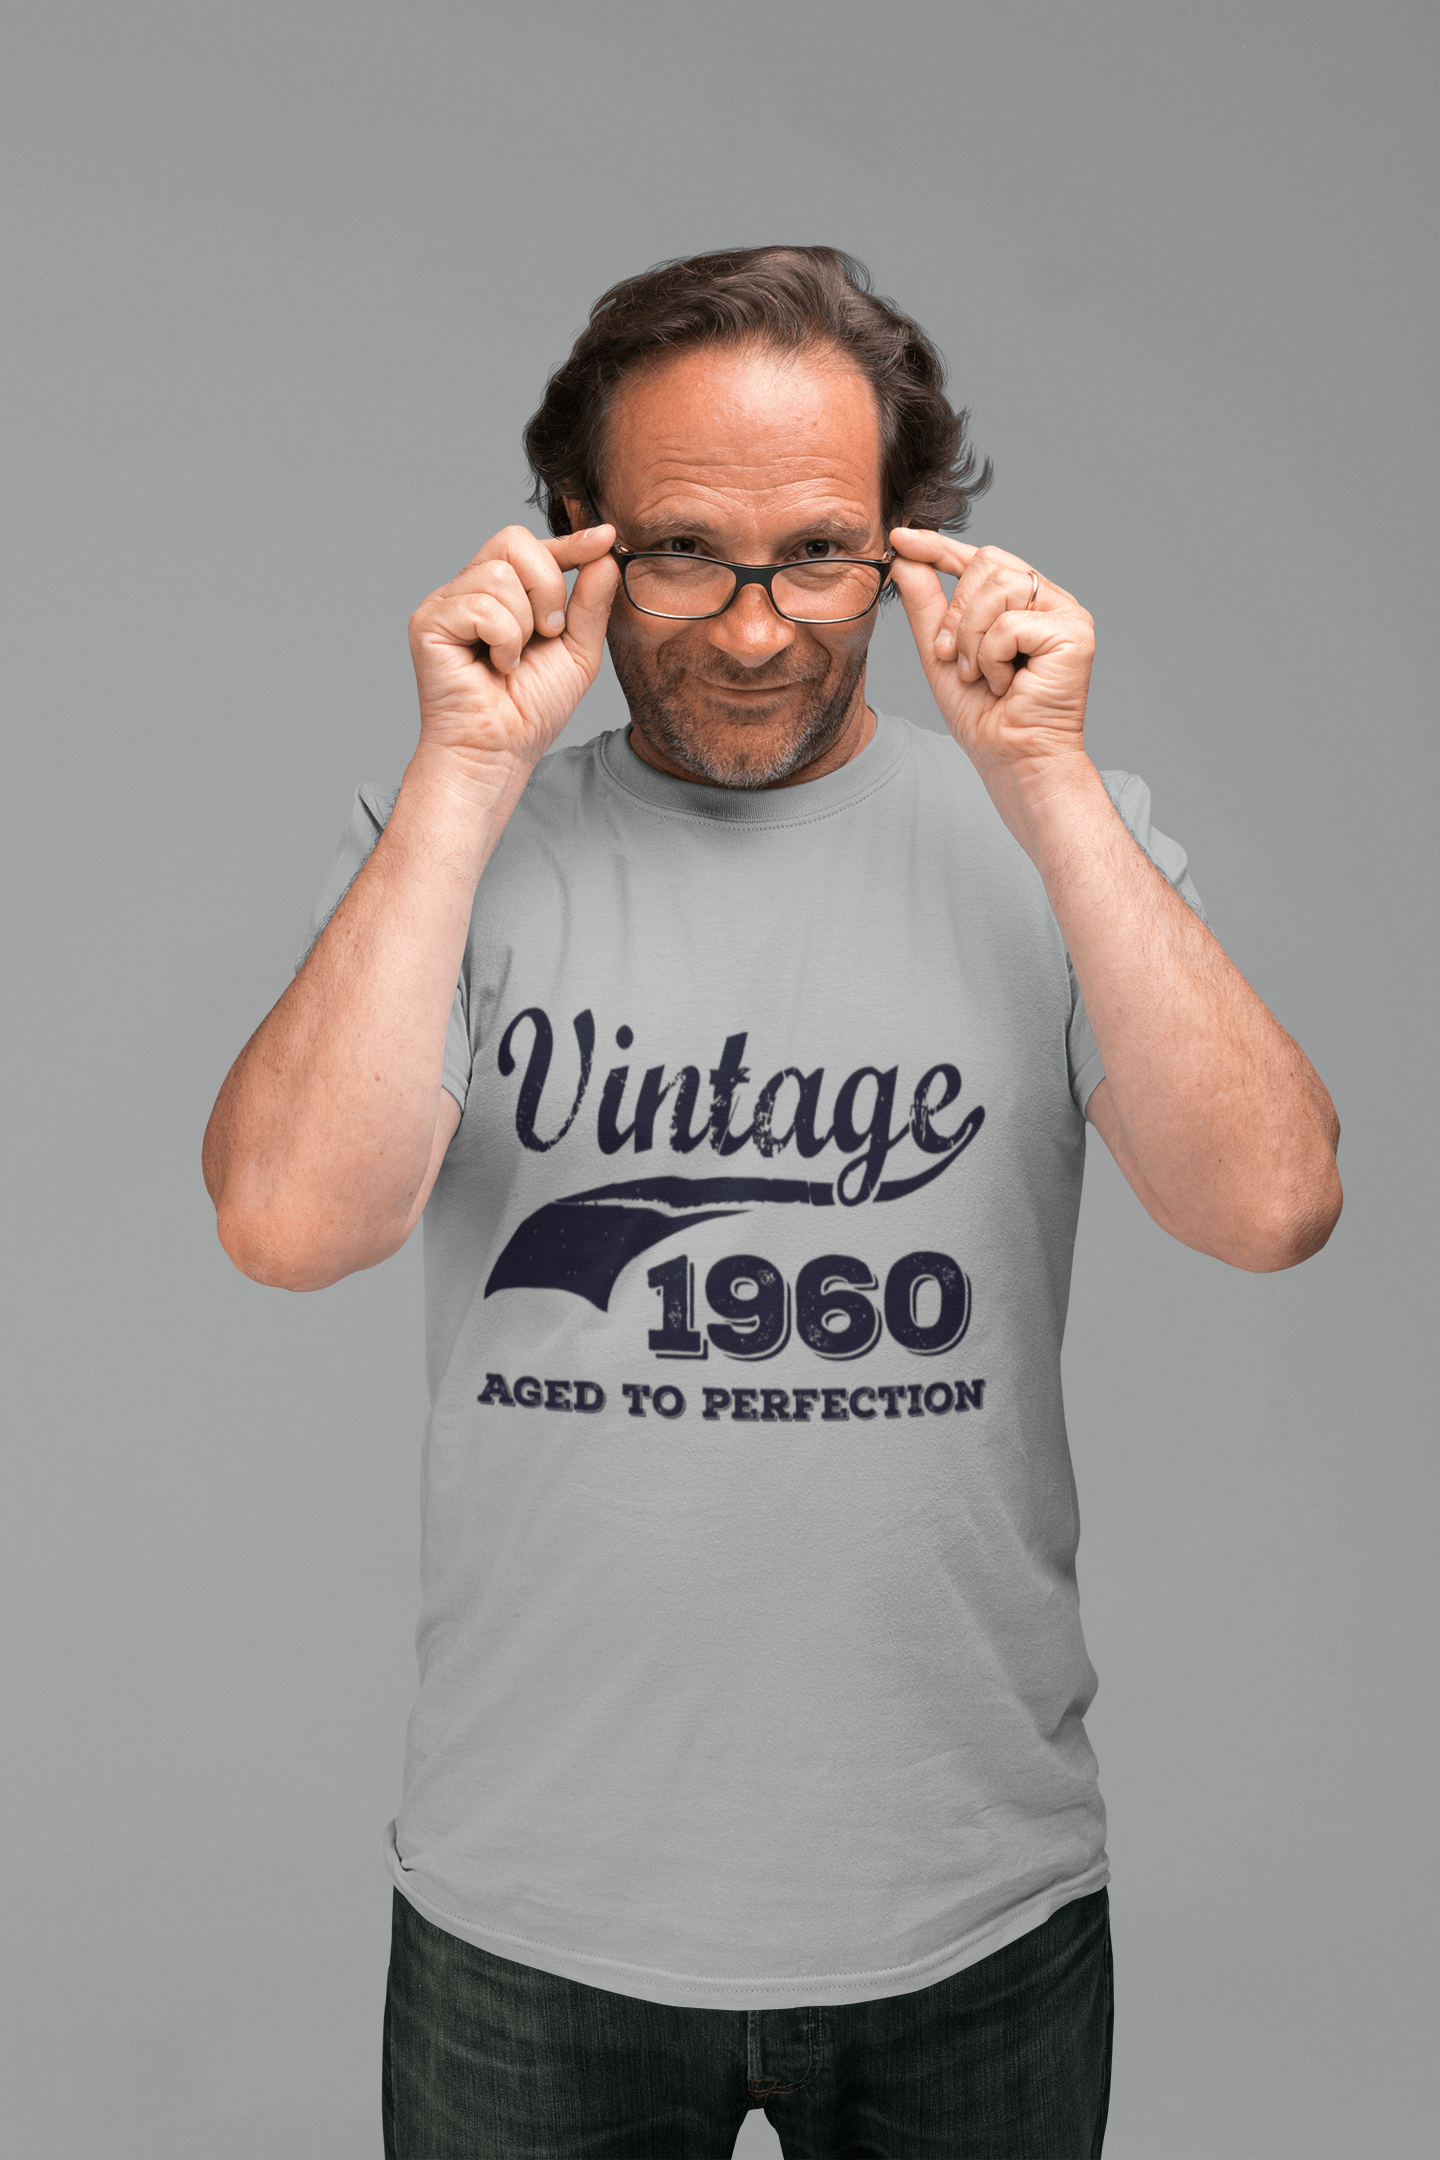 Vintage Aged to Perfection 1960, Gris, T-shirt à manches courtes et col rond pour hommes, t-shirt cadeau 00346